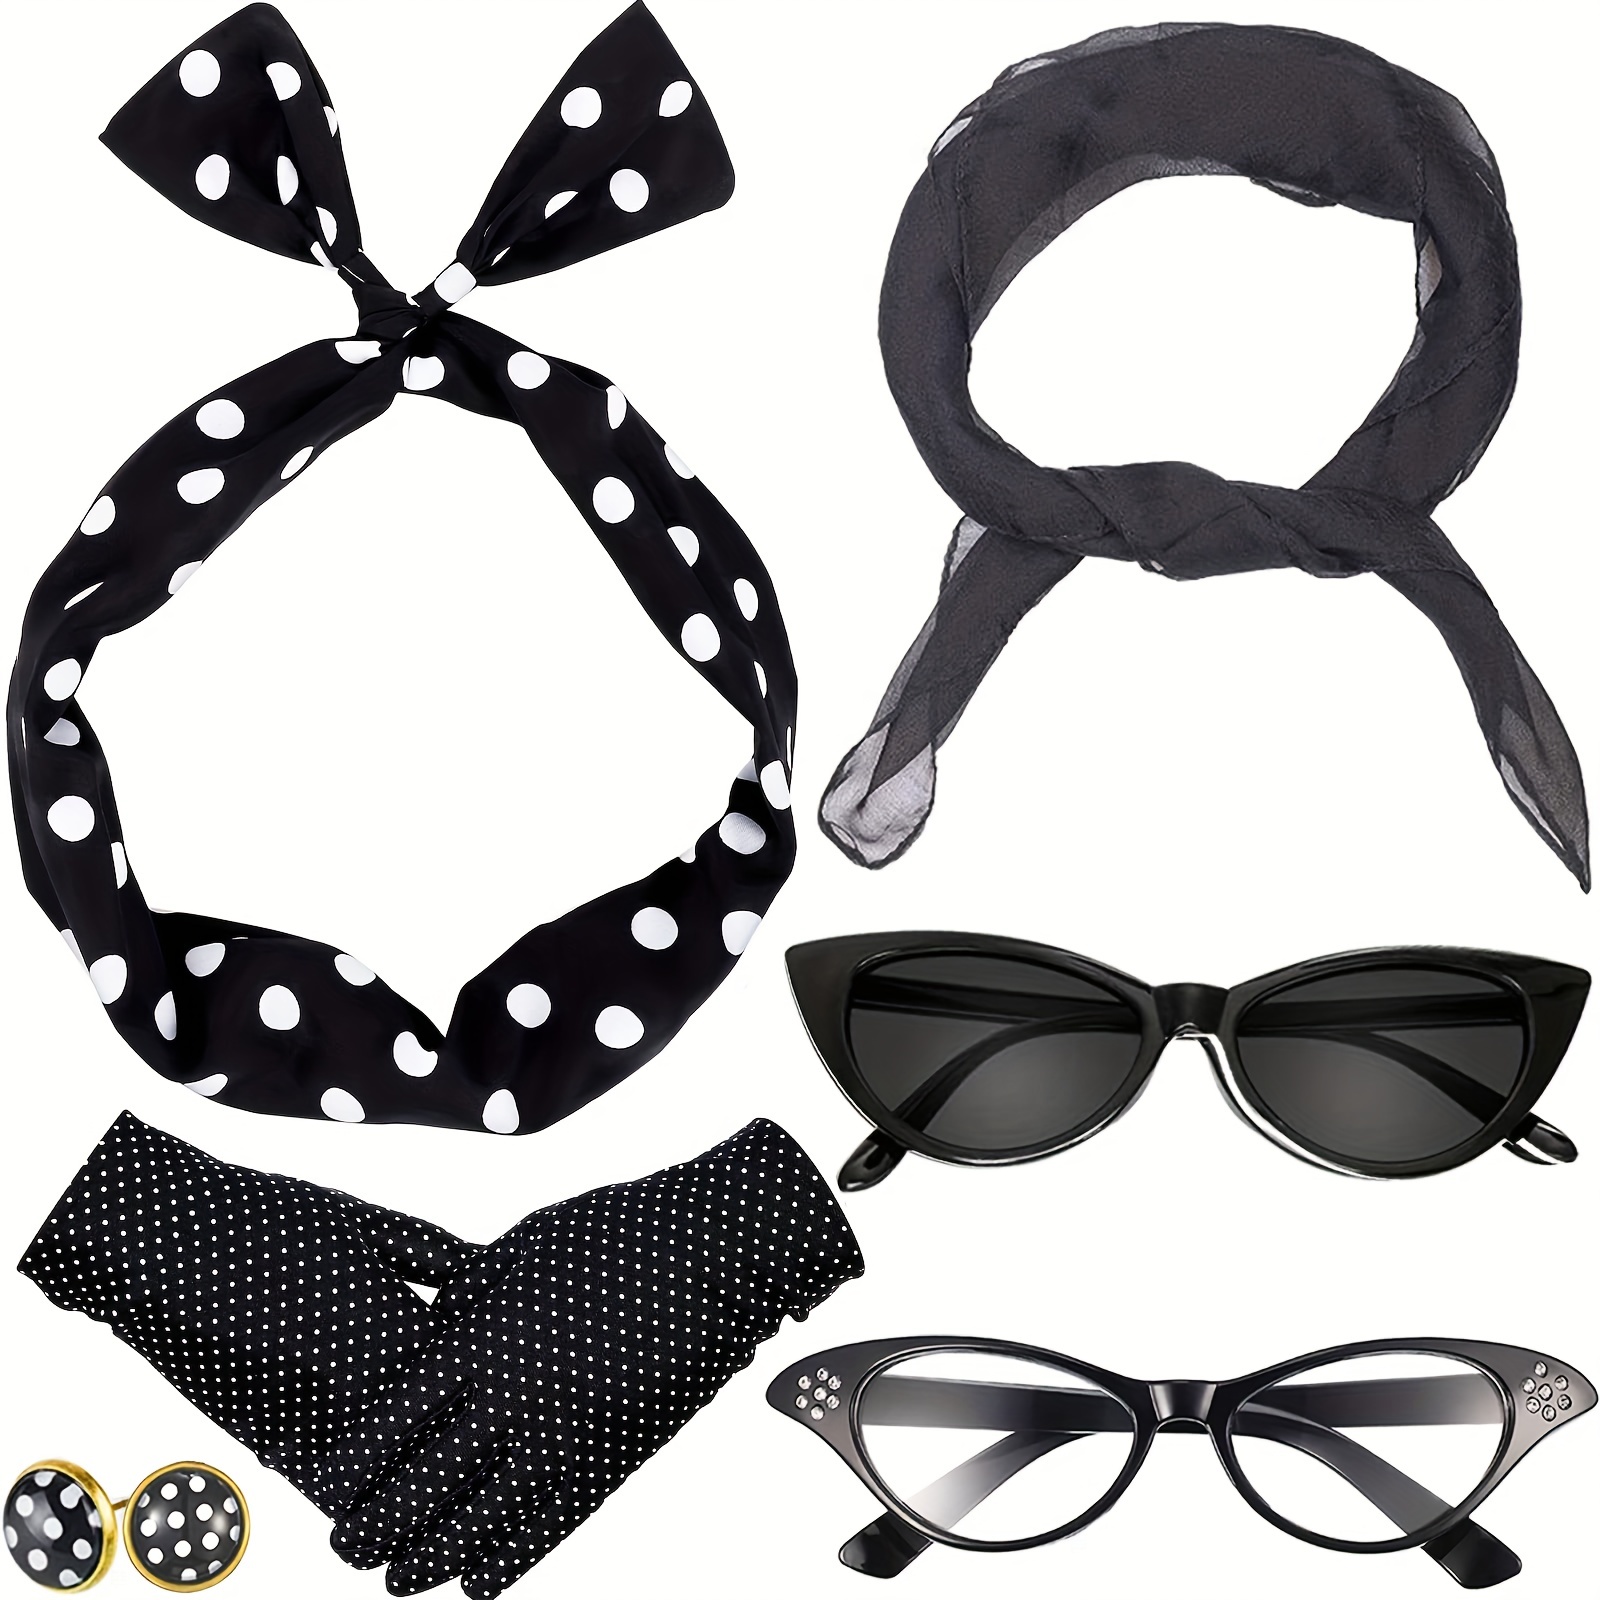 Comprar Gafas Lunares Negras y Blancos - Complementos años 50-60 (Grease)